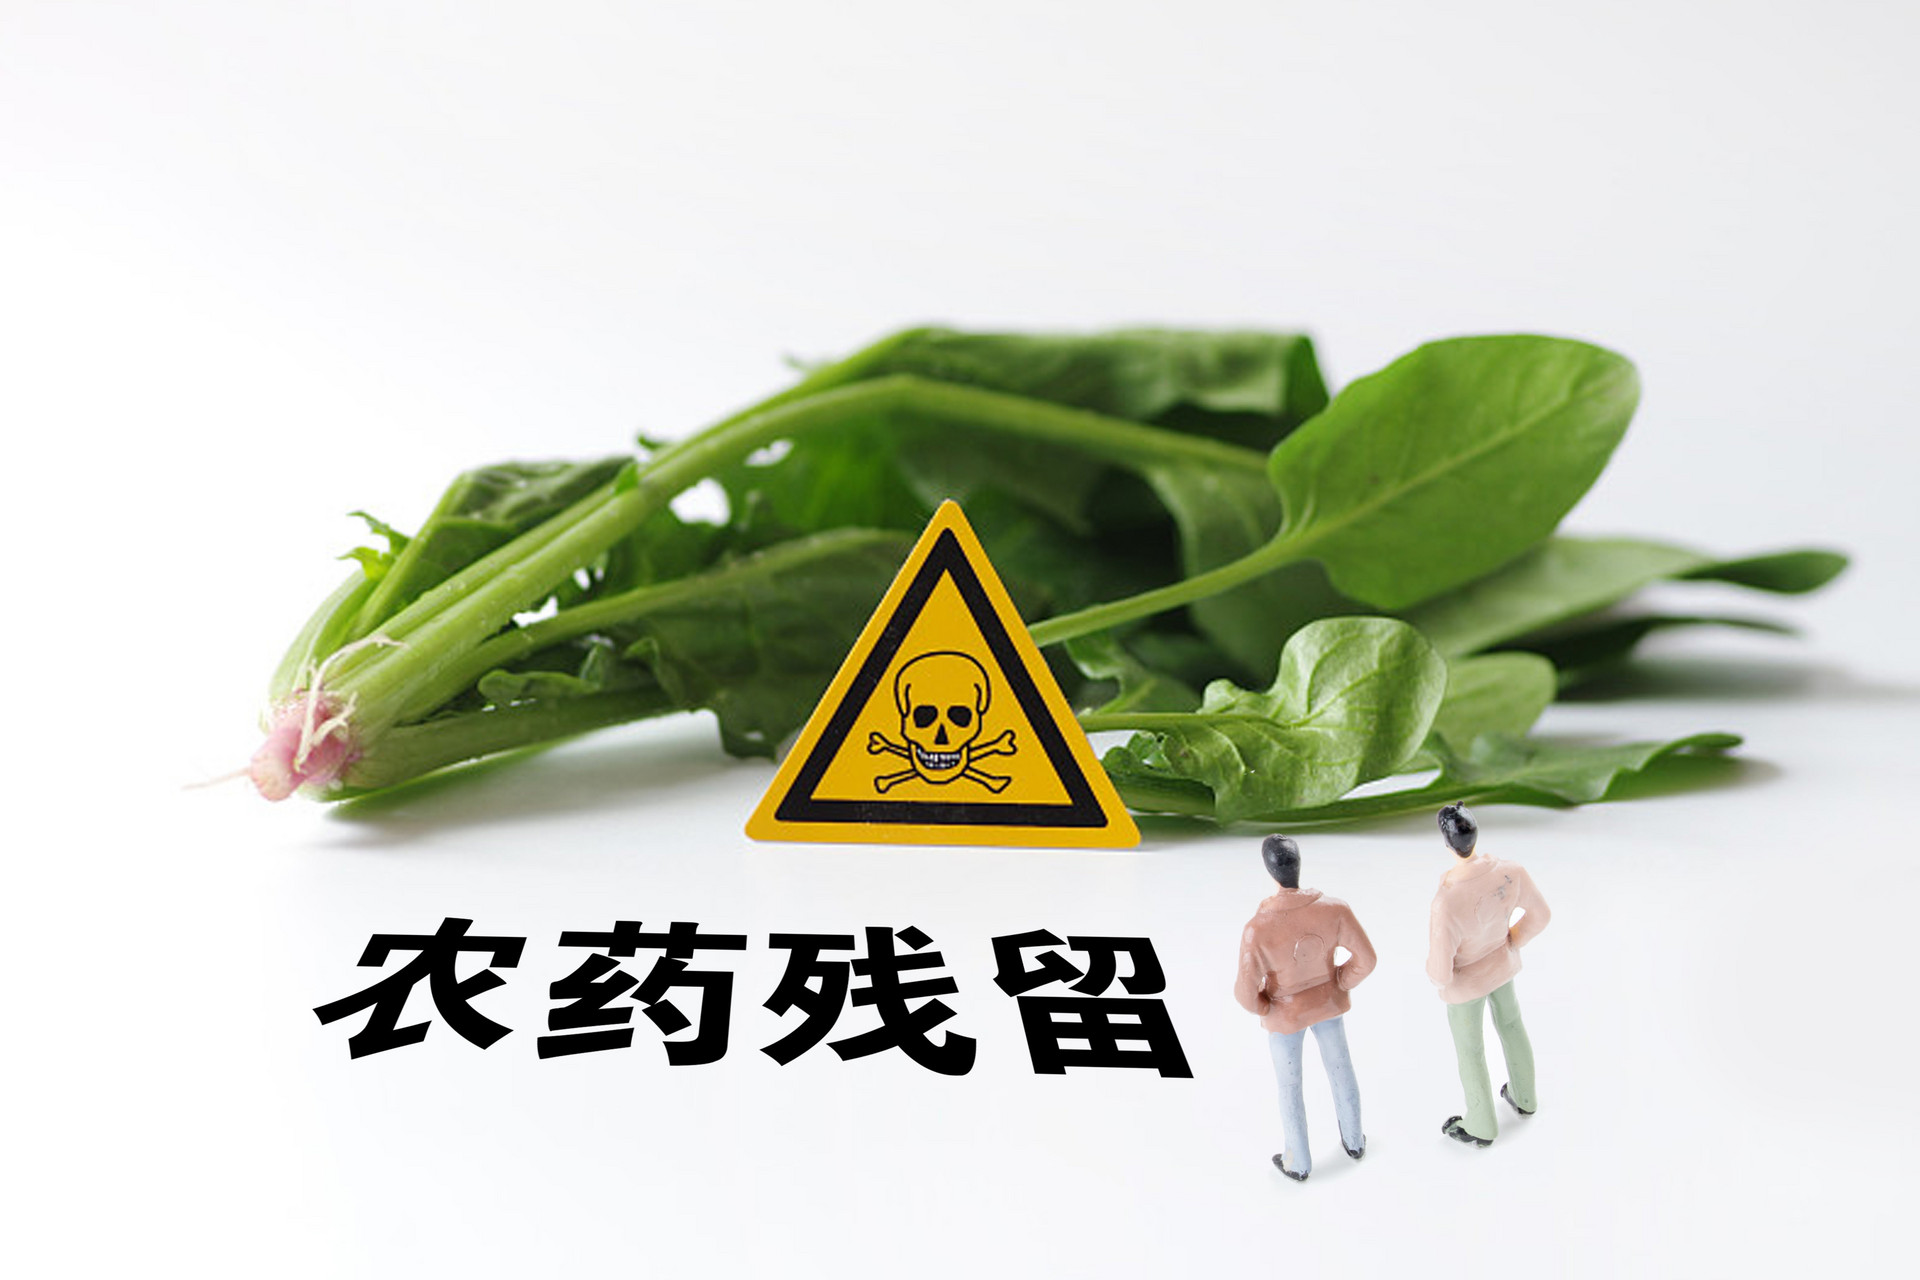 可米达-杀虫剂-上海生农生化制品股份有限公司 -- 官网